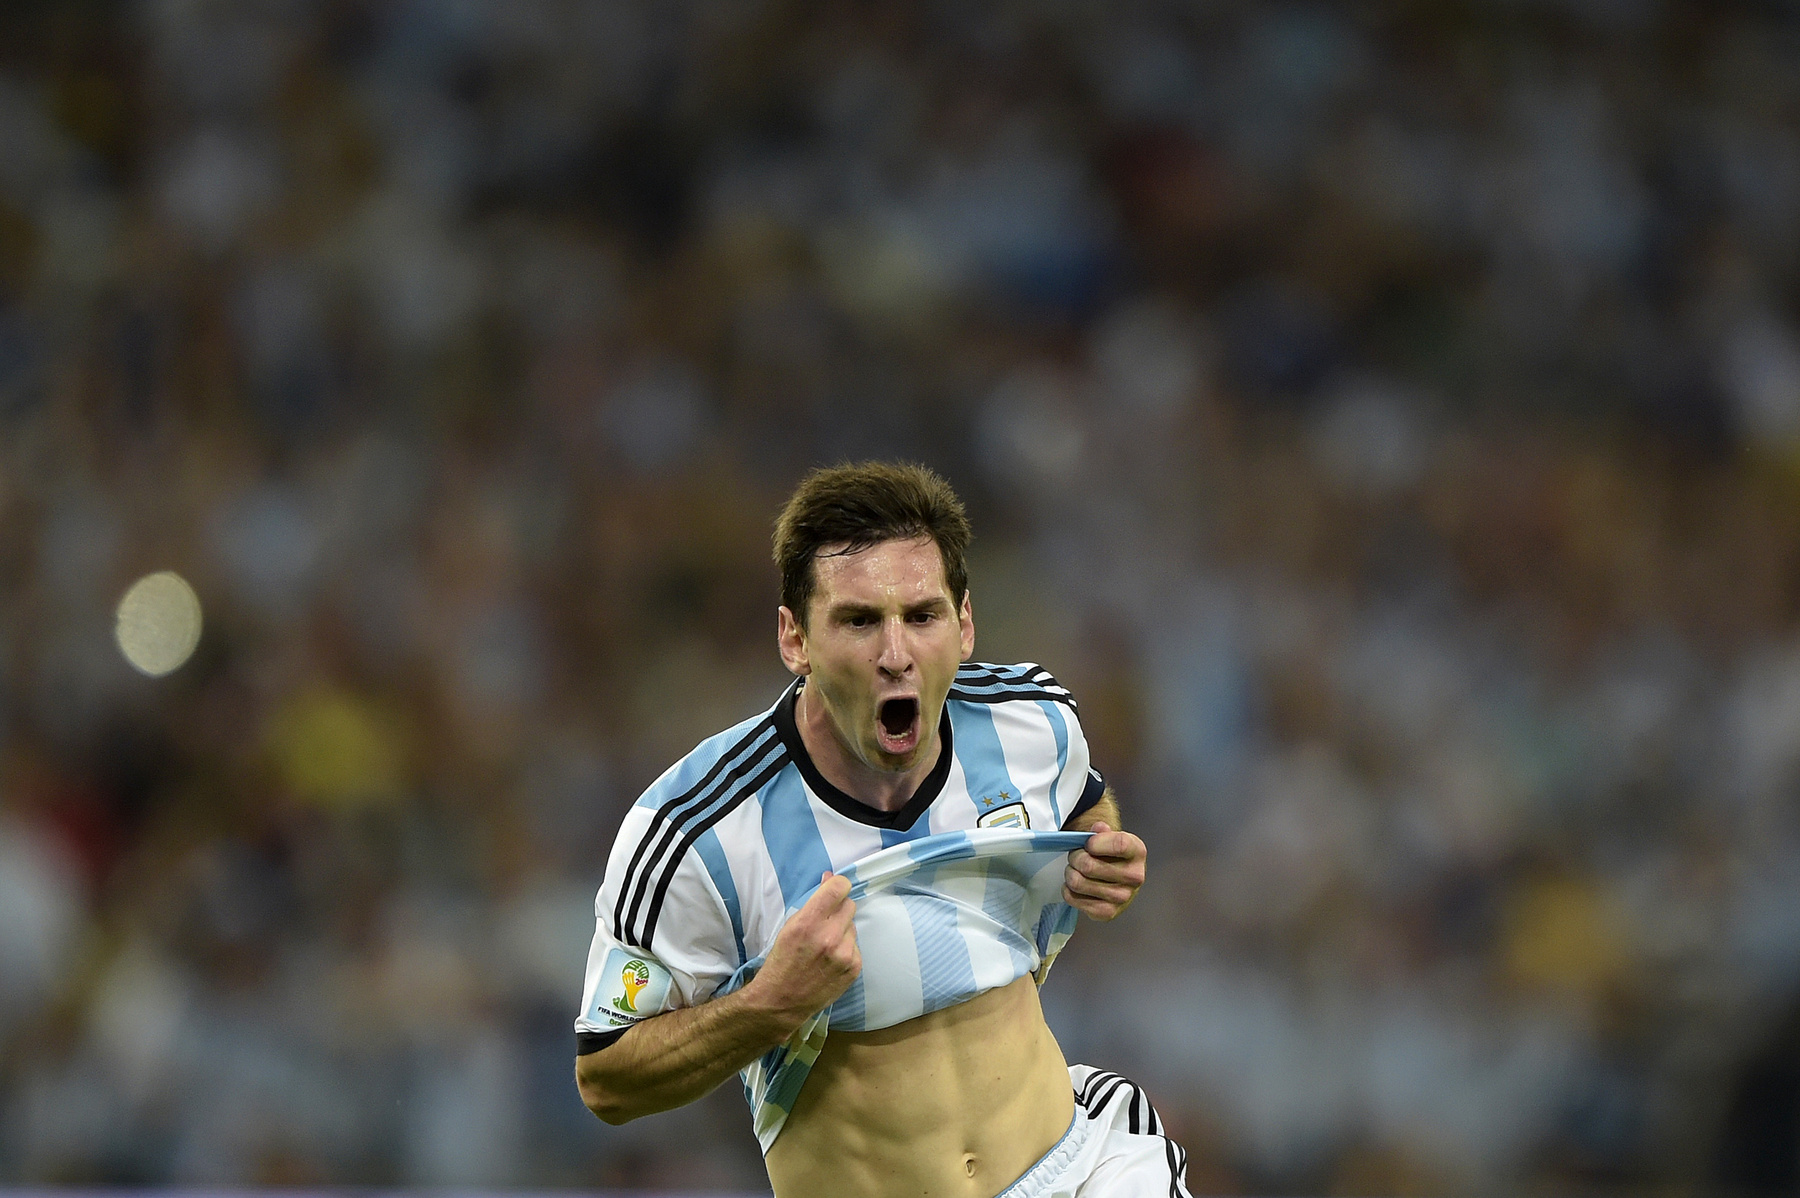 Messi a második félidőben már nagy kedvvel játszott, és már területe is volt jól futballozni